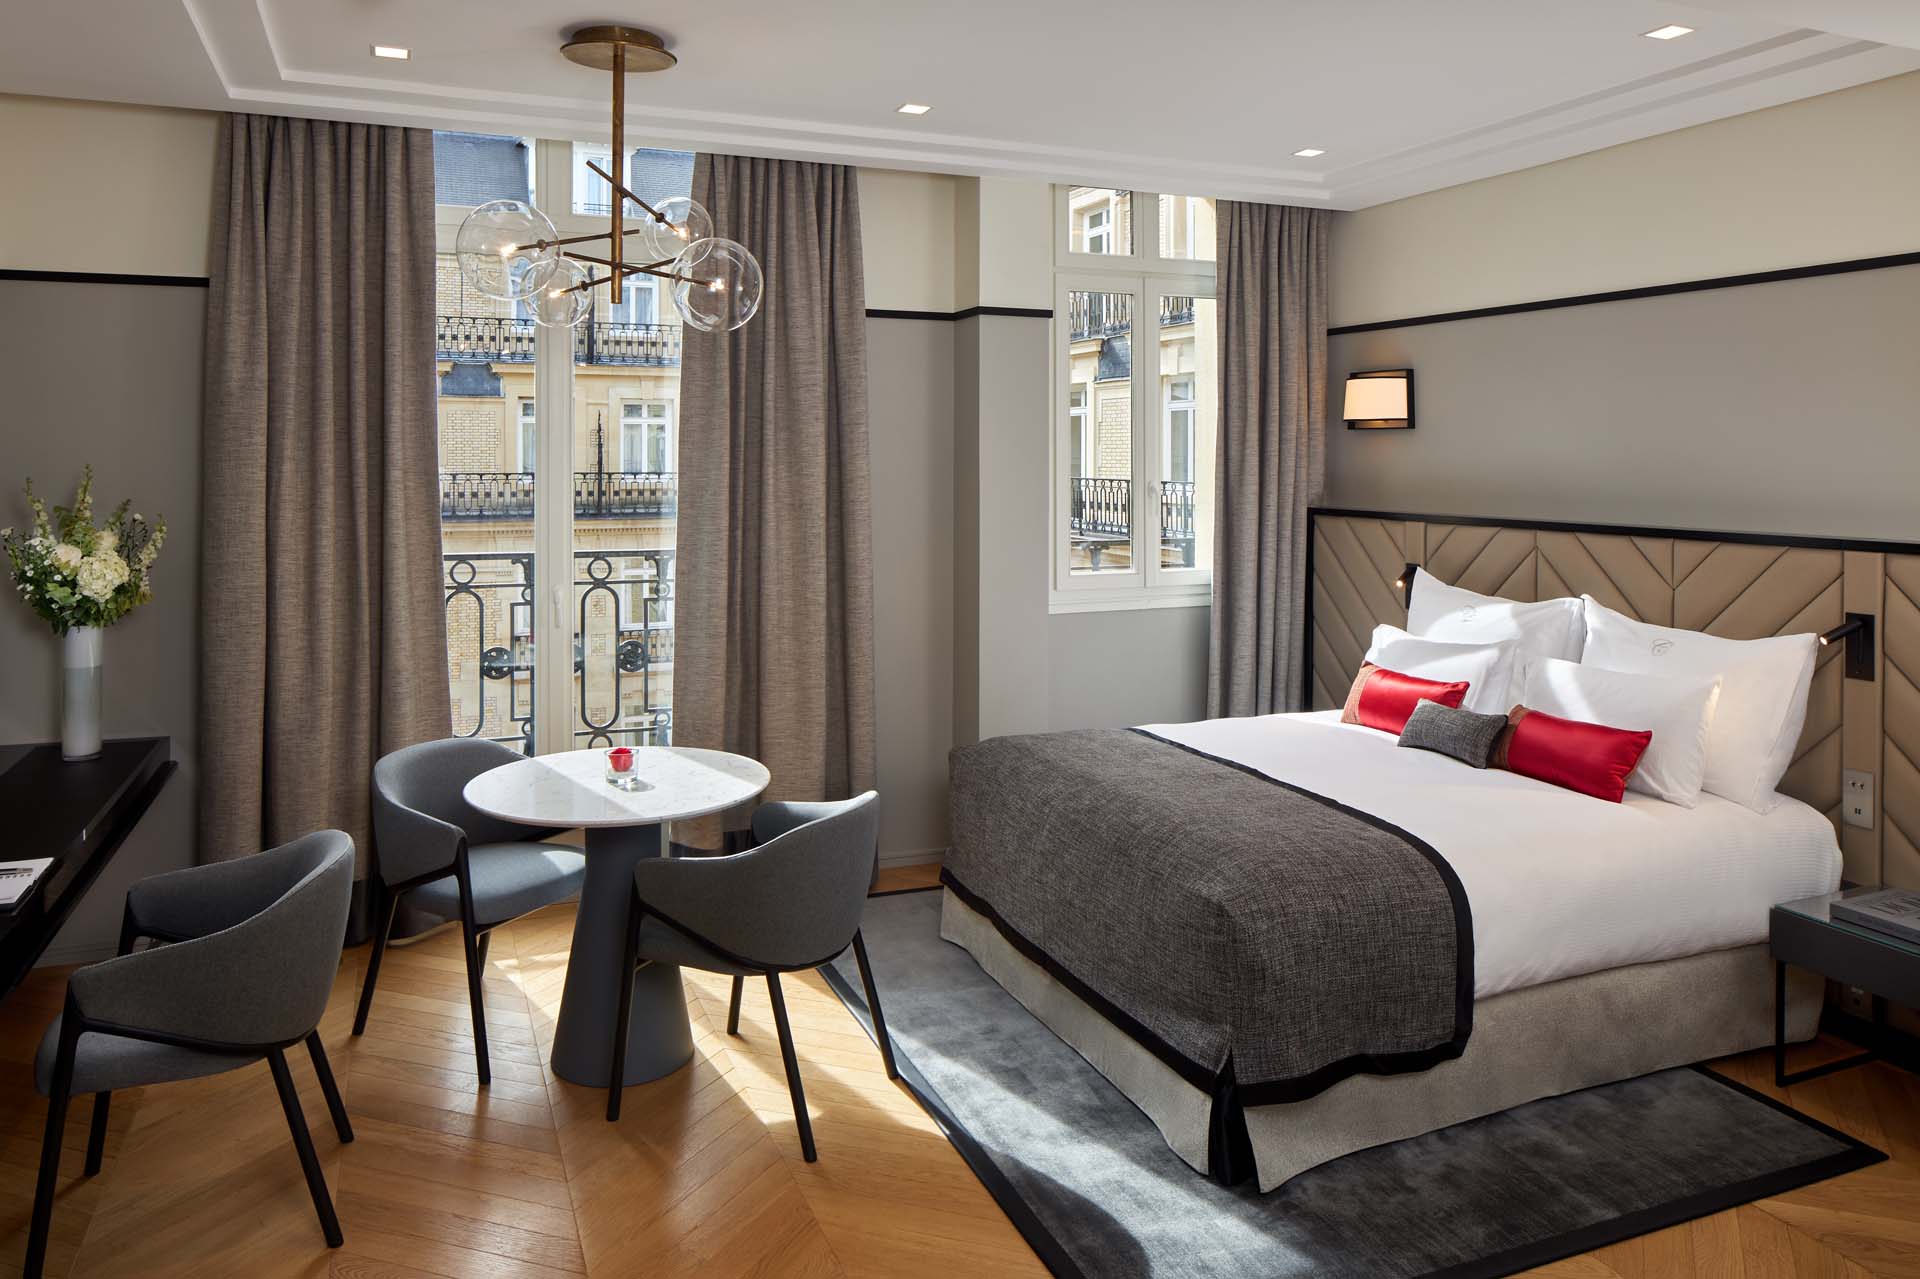 5 Star Hotel Rooms & Suites - Paris